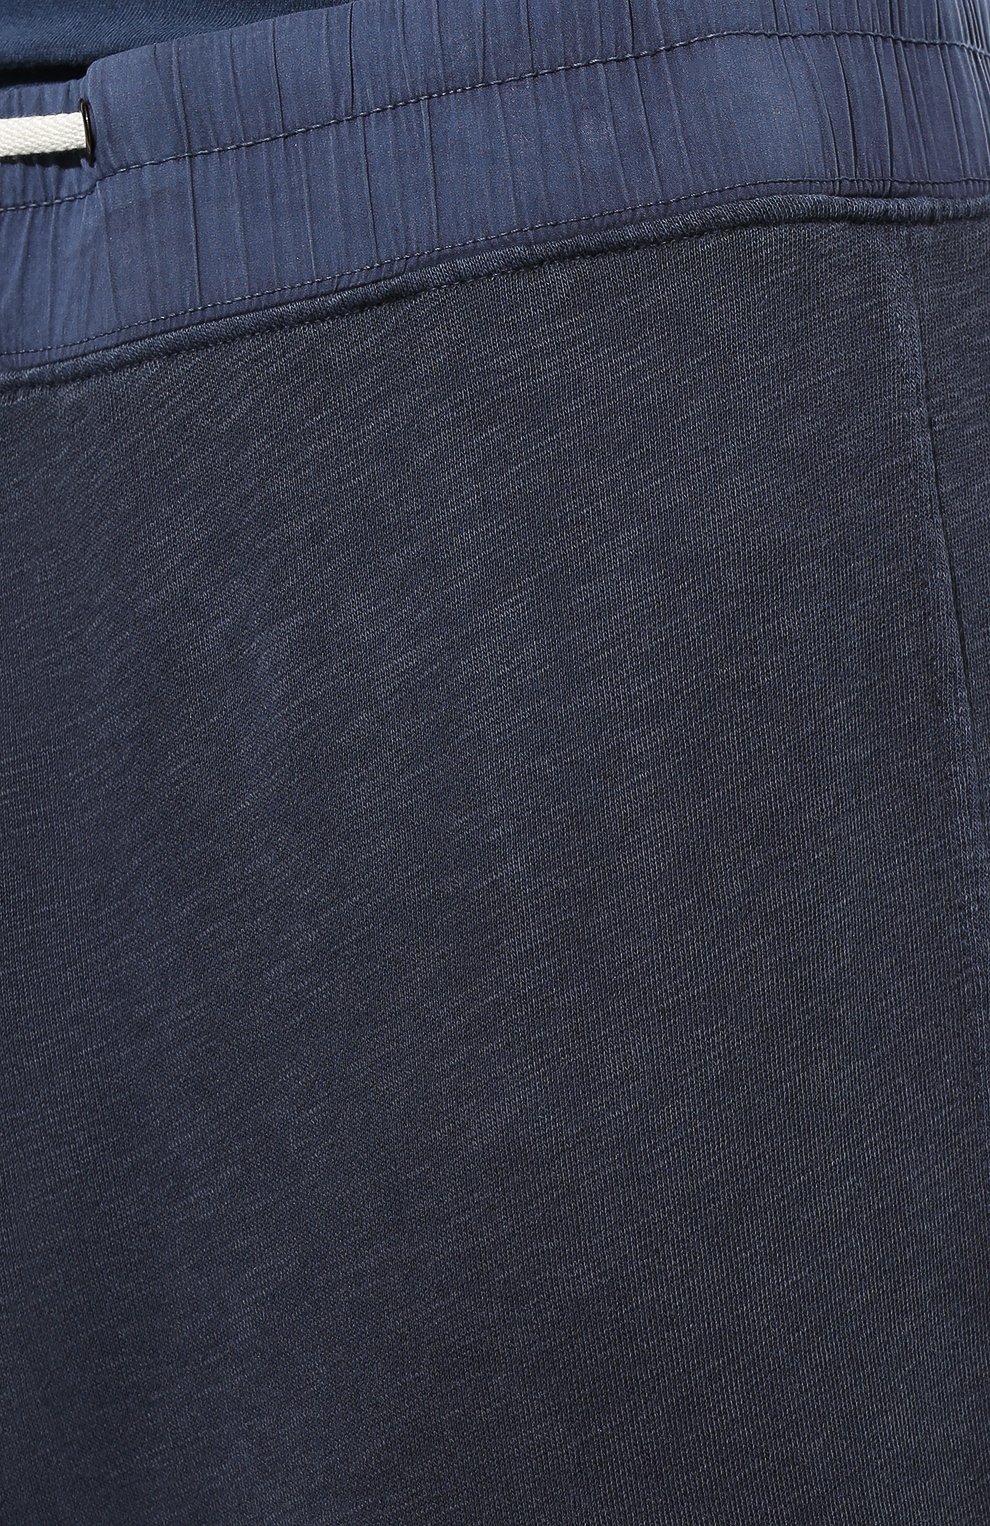 Мужские хлопковые брюки JAMES PERSE синего цвета, арт. MXA1352 | Фото 5 (Длина (брюки, джинсы): Стандартные; Случай: Повседневный; Материал внешний: Хлопок; Стили: Спорт-шик)